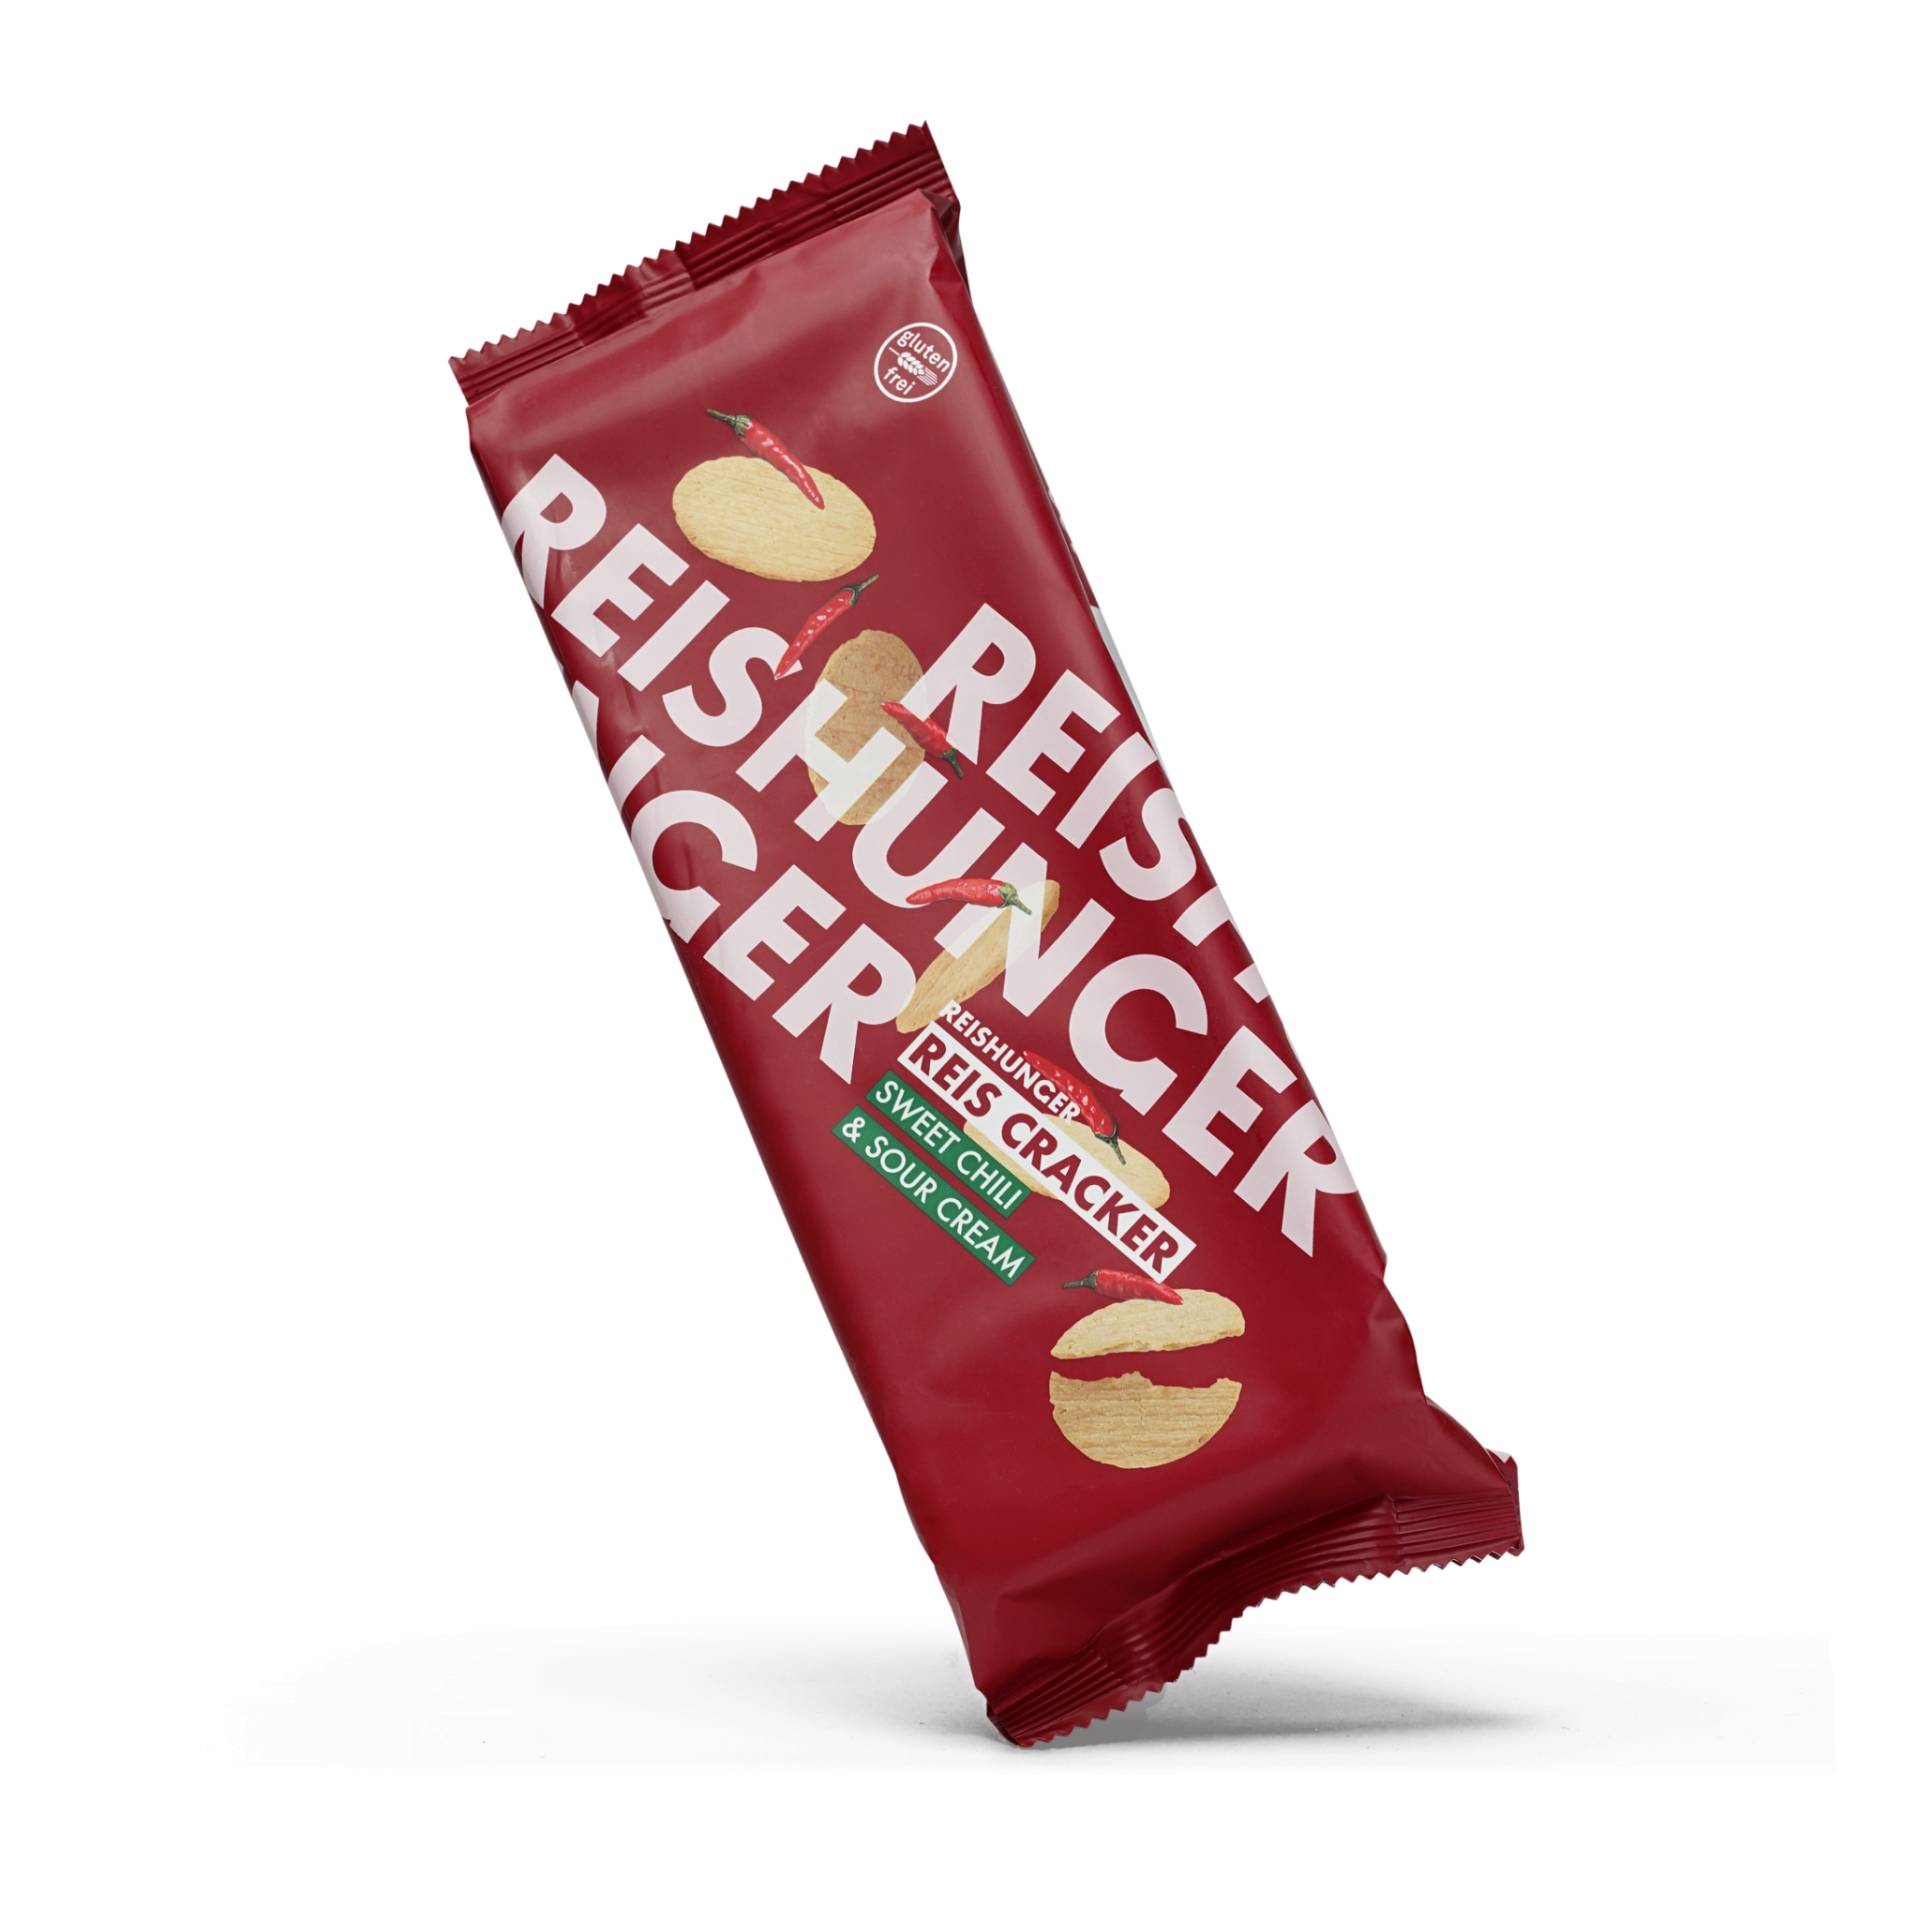 Reiscracker Sweet Chili & Sour Cream (4er Set)